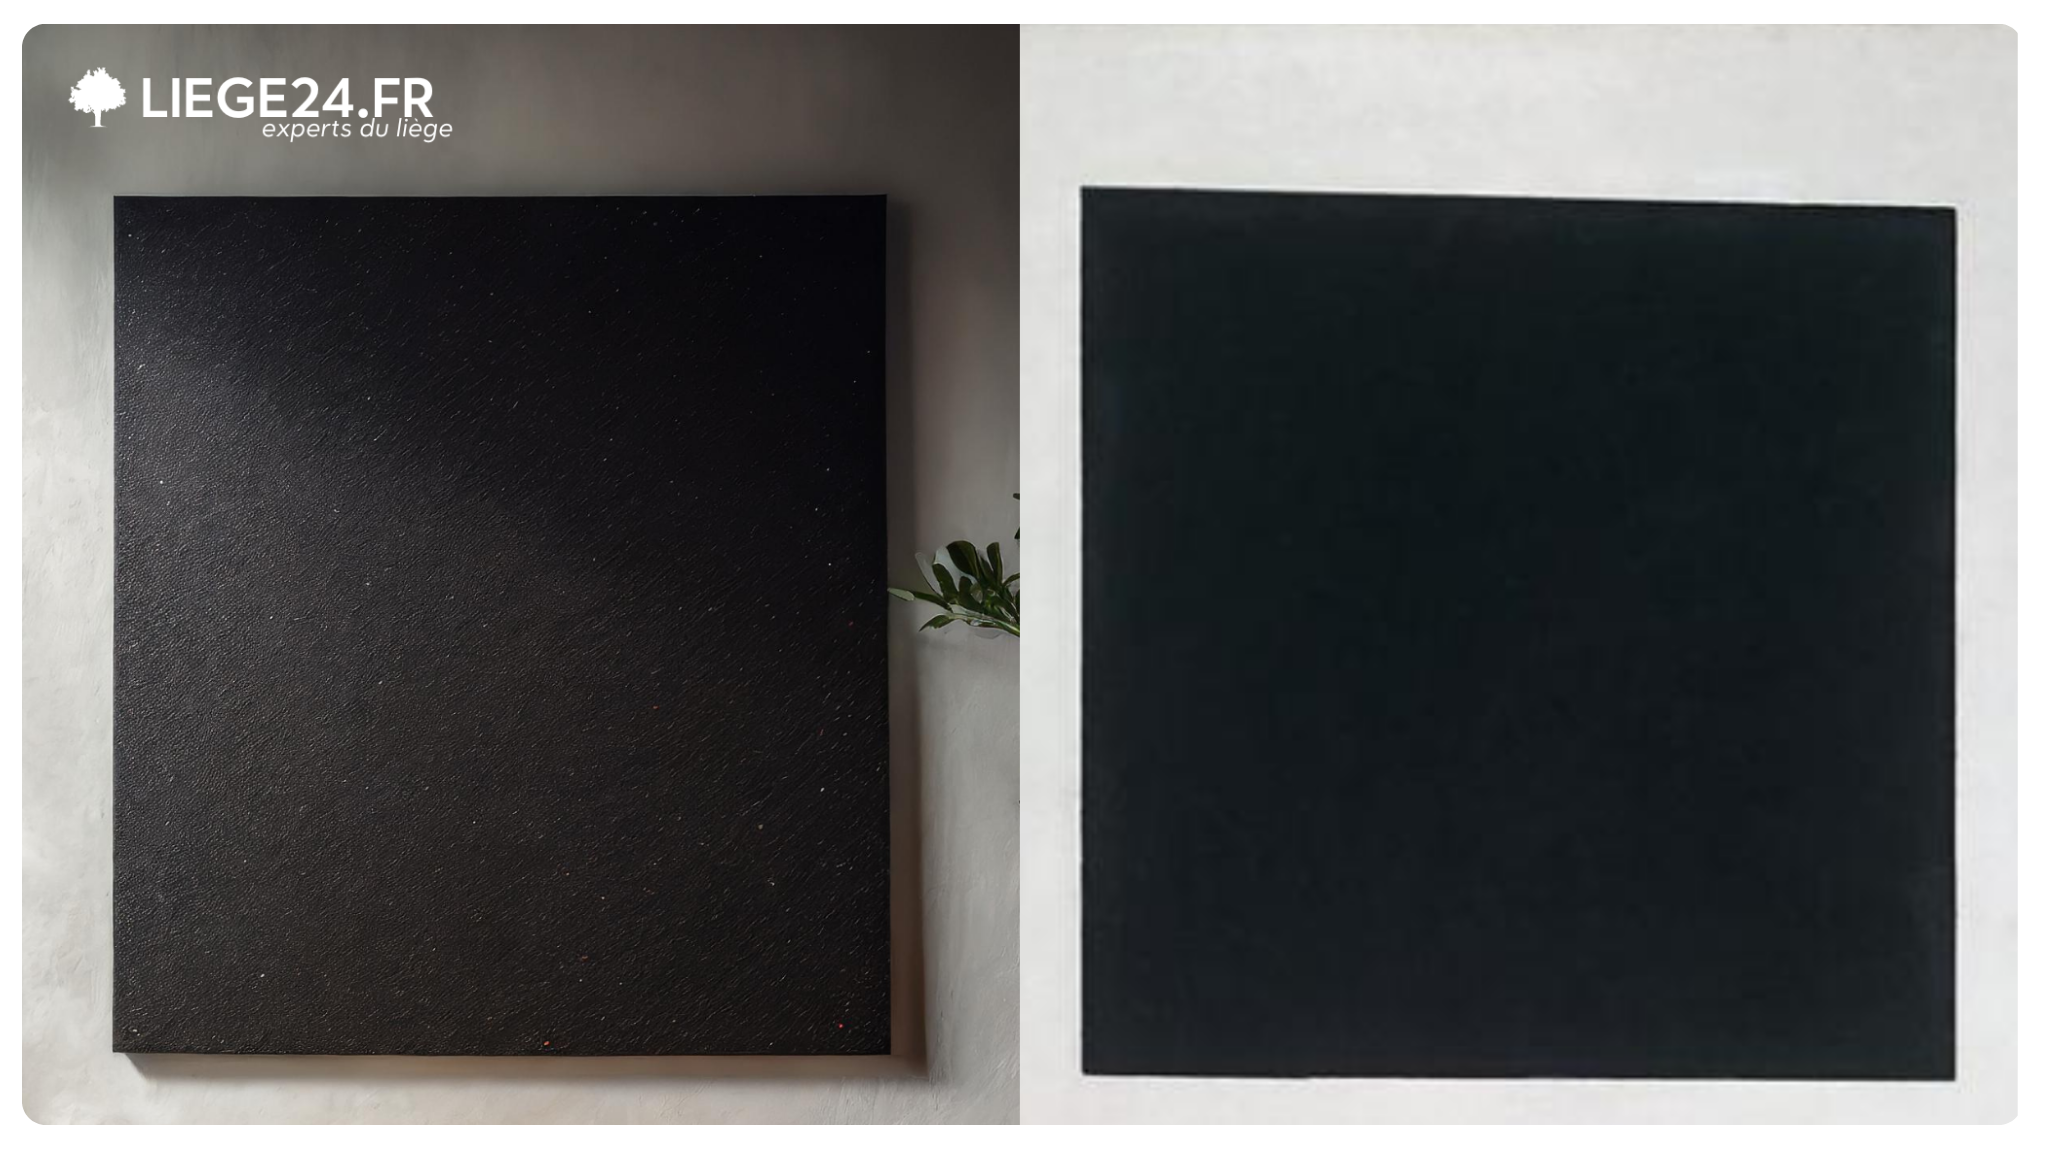 Lige naturel sous forme de panneaux de lige ou de lige dcoratif isolant sur un mur noir sans cadre. En remplacement d'une carte sans couverture comme les tableaux scolaires ou d'information typiques.